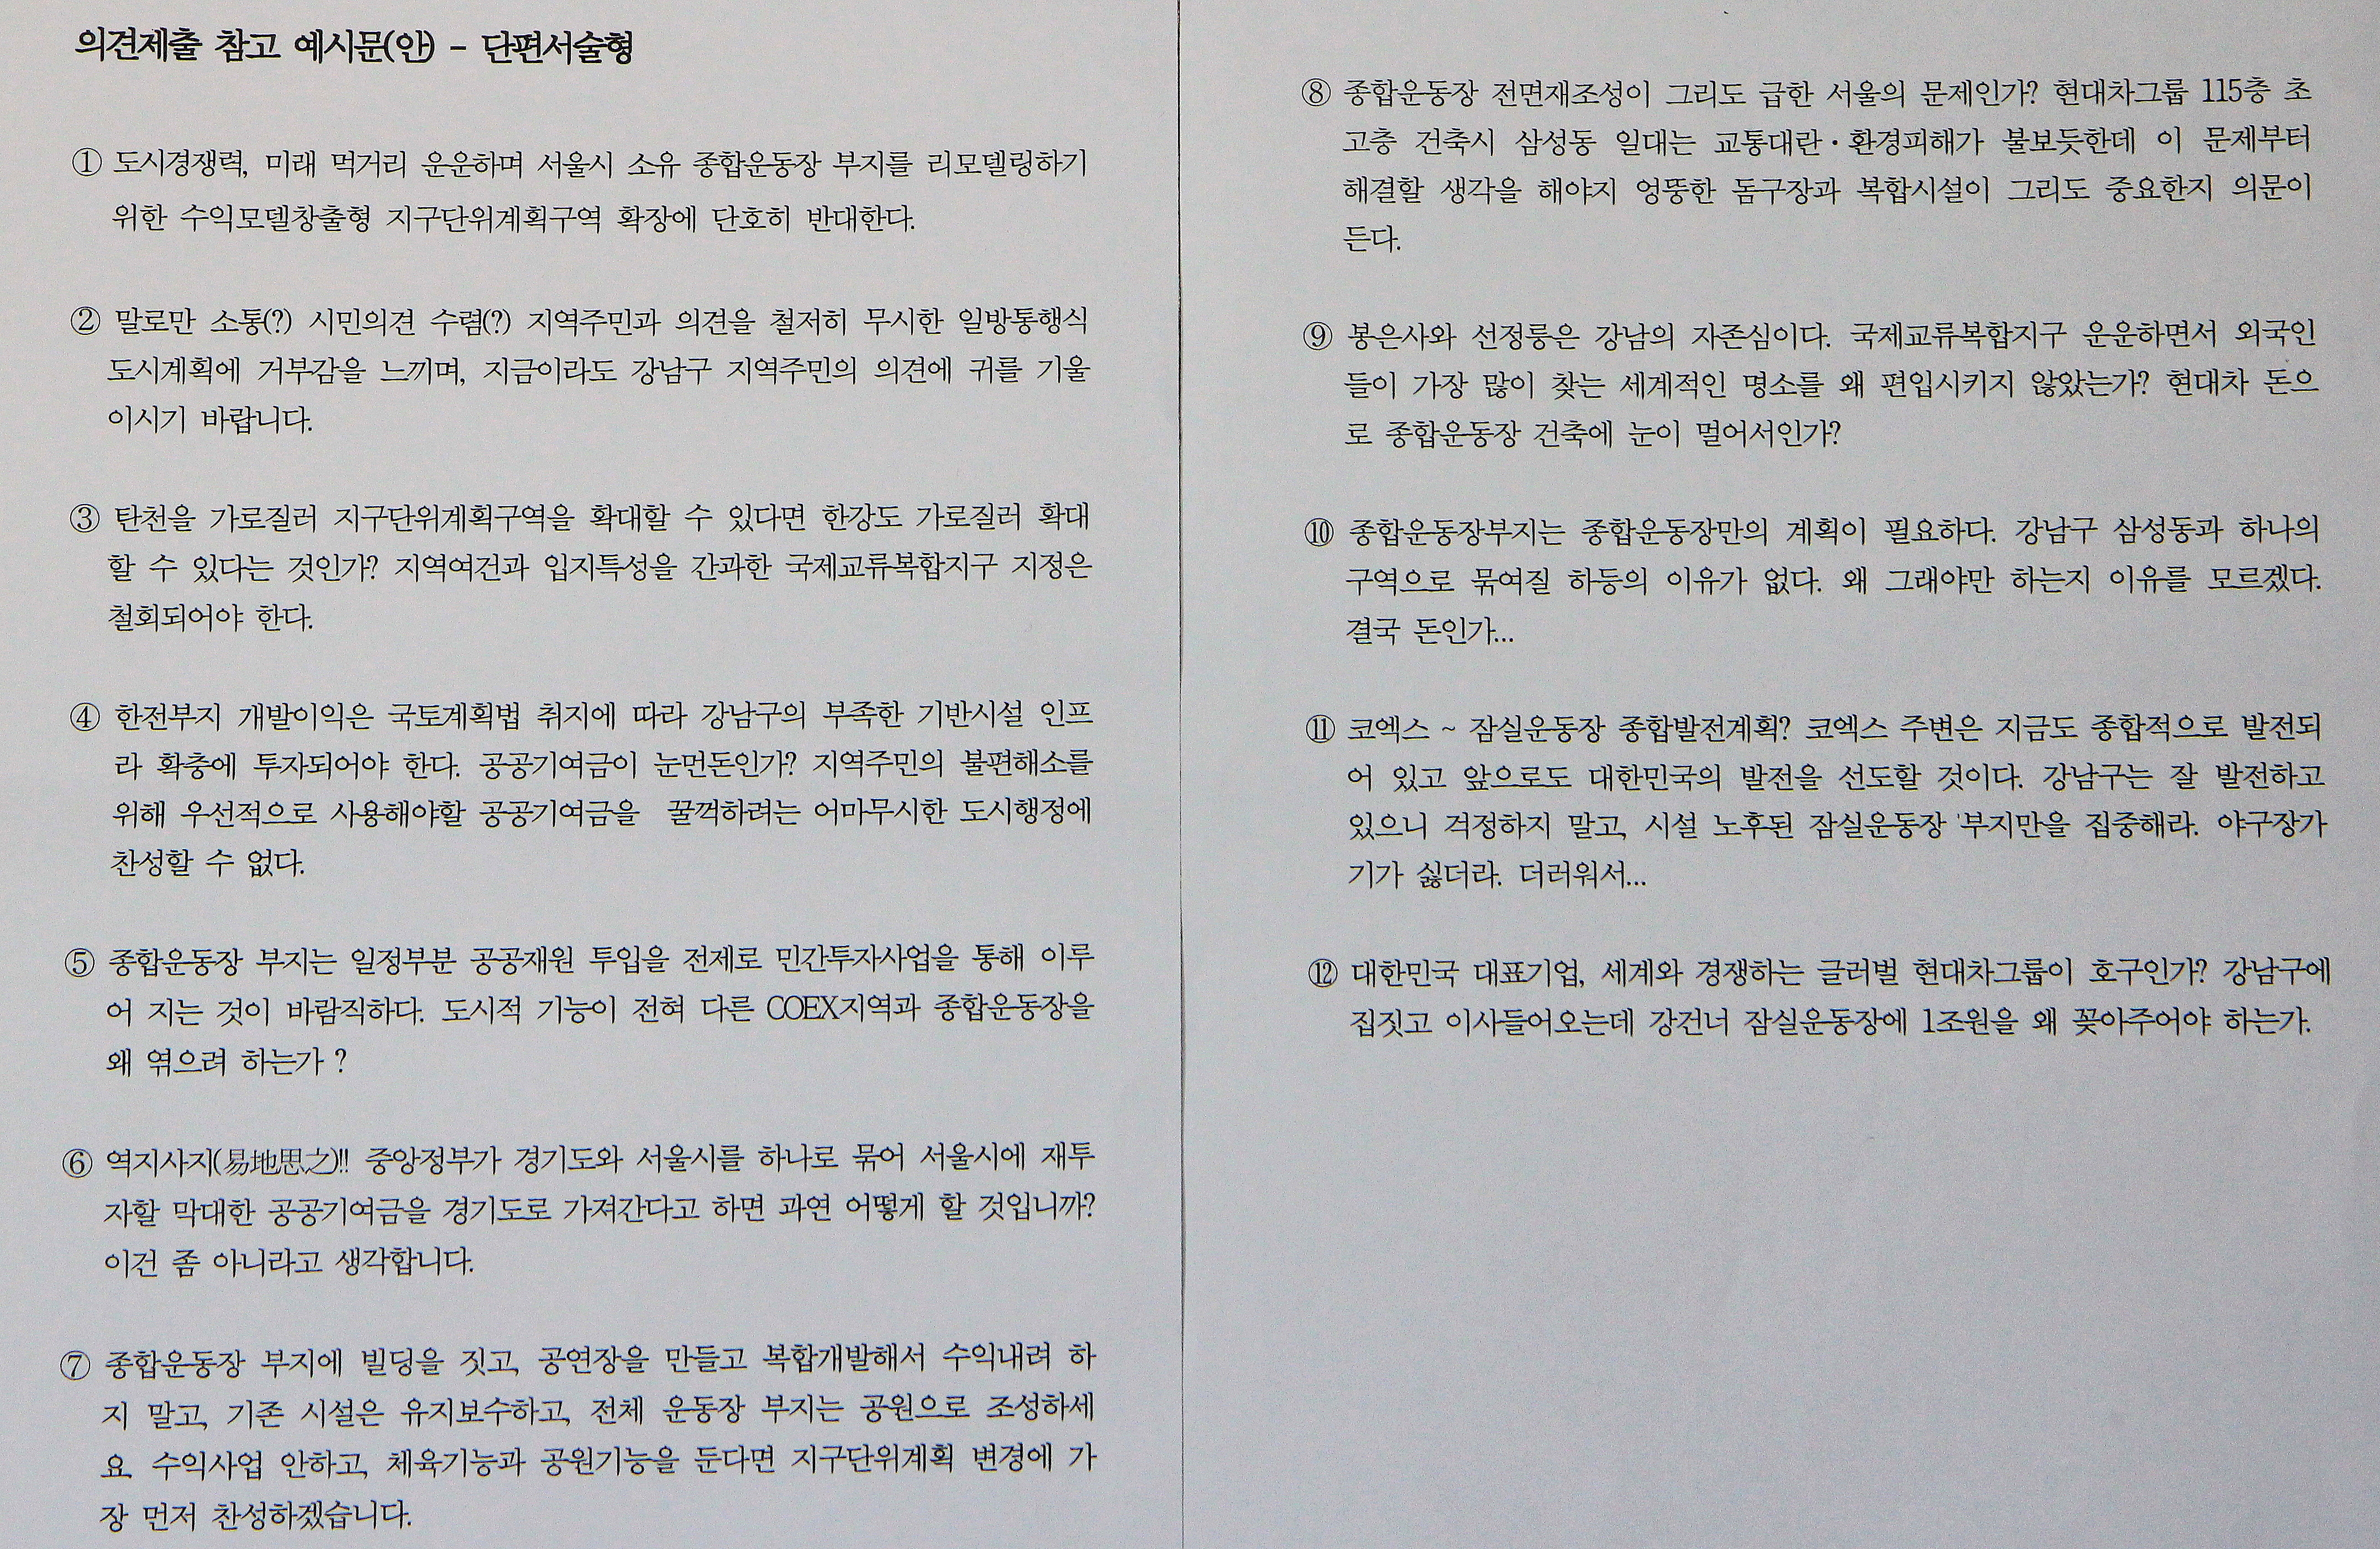 소속 공무원들이 서울시에 보내는 의견서를 쓸때 '참고'하도록 강남구청이 만든 예시문.